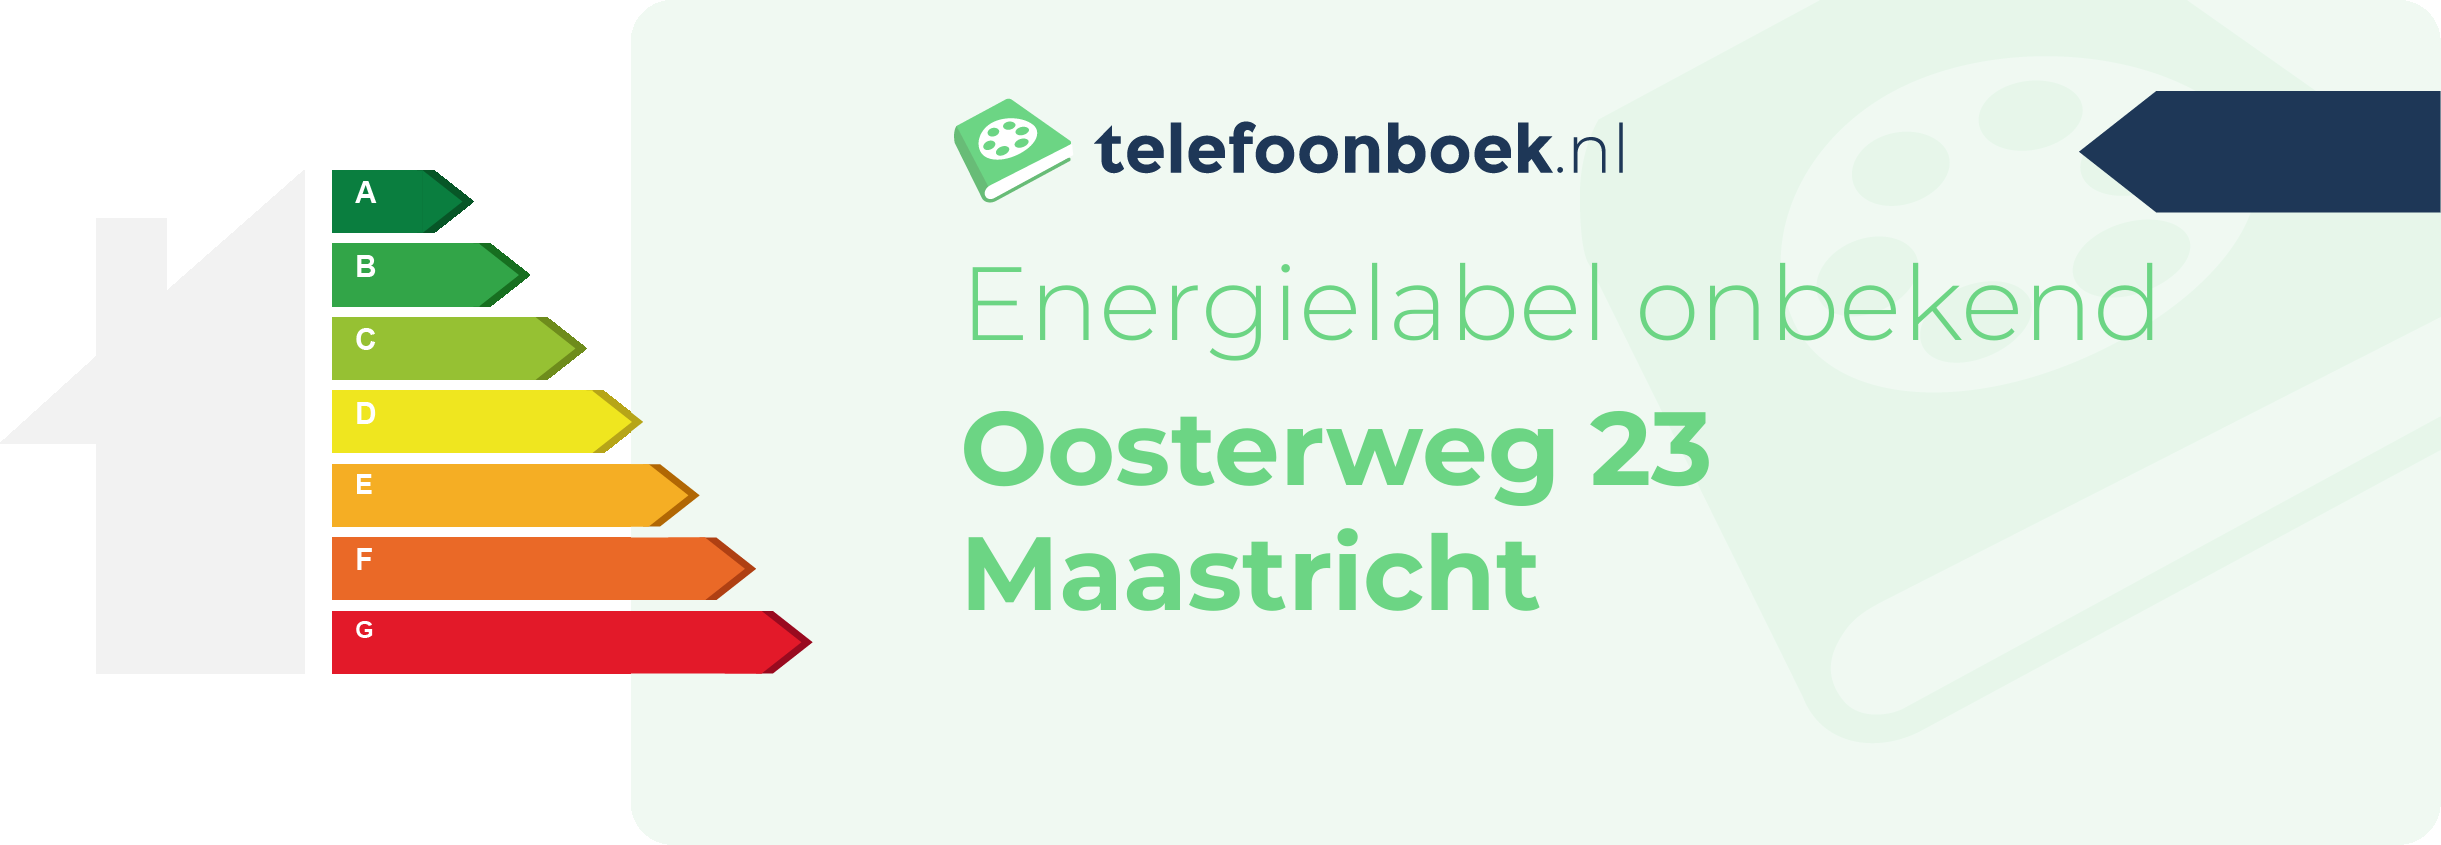 Energielabel Oosterweg 23 Maastricht